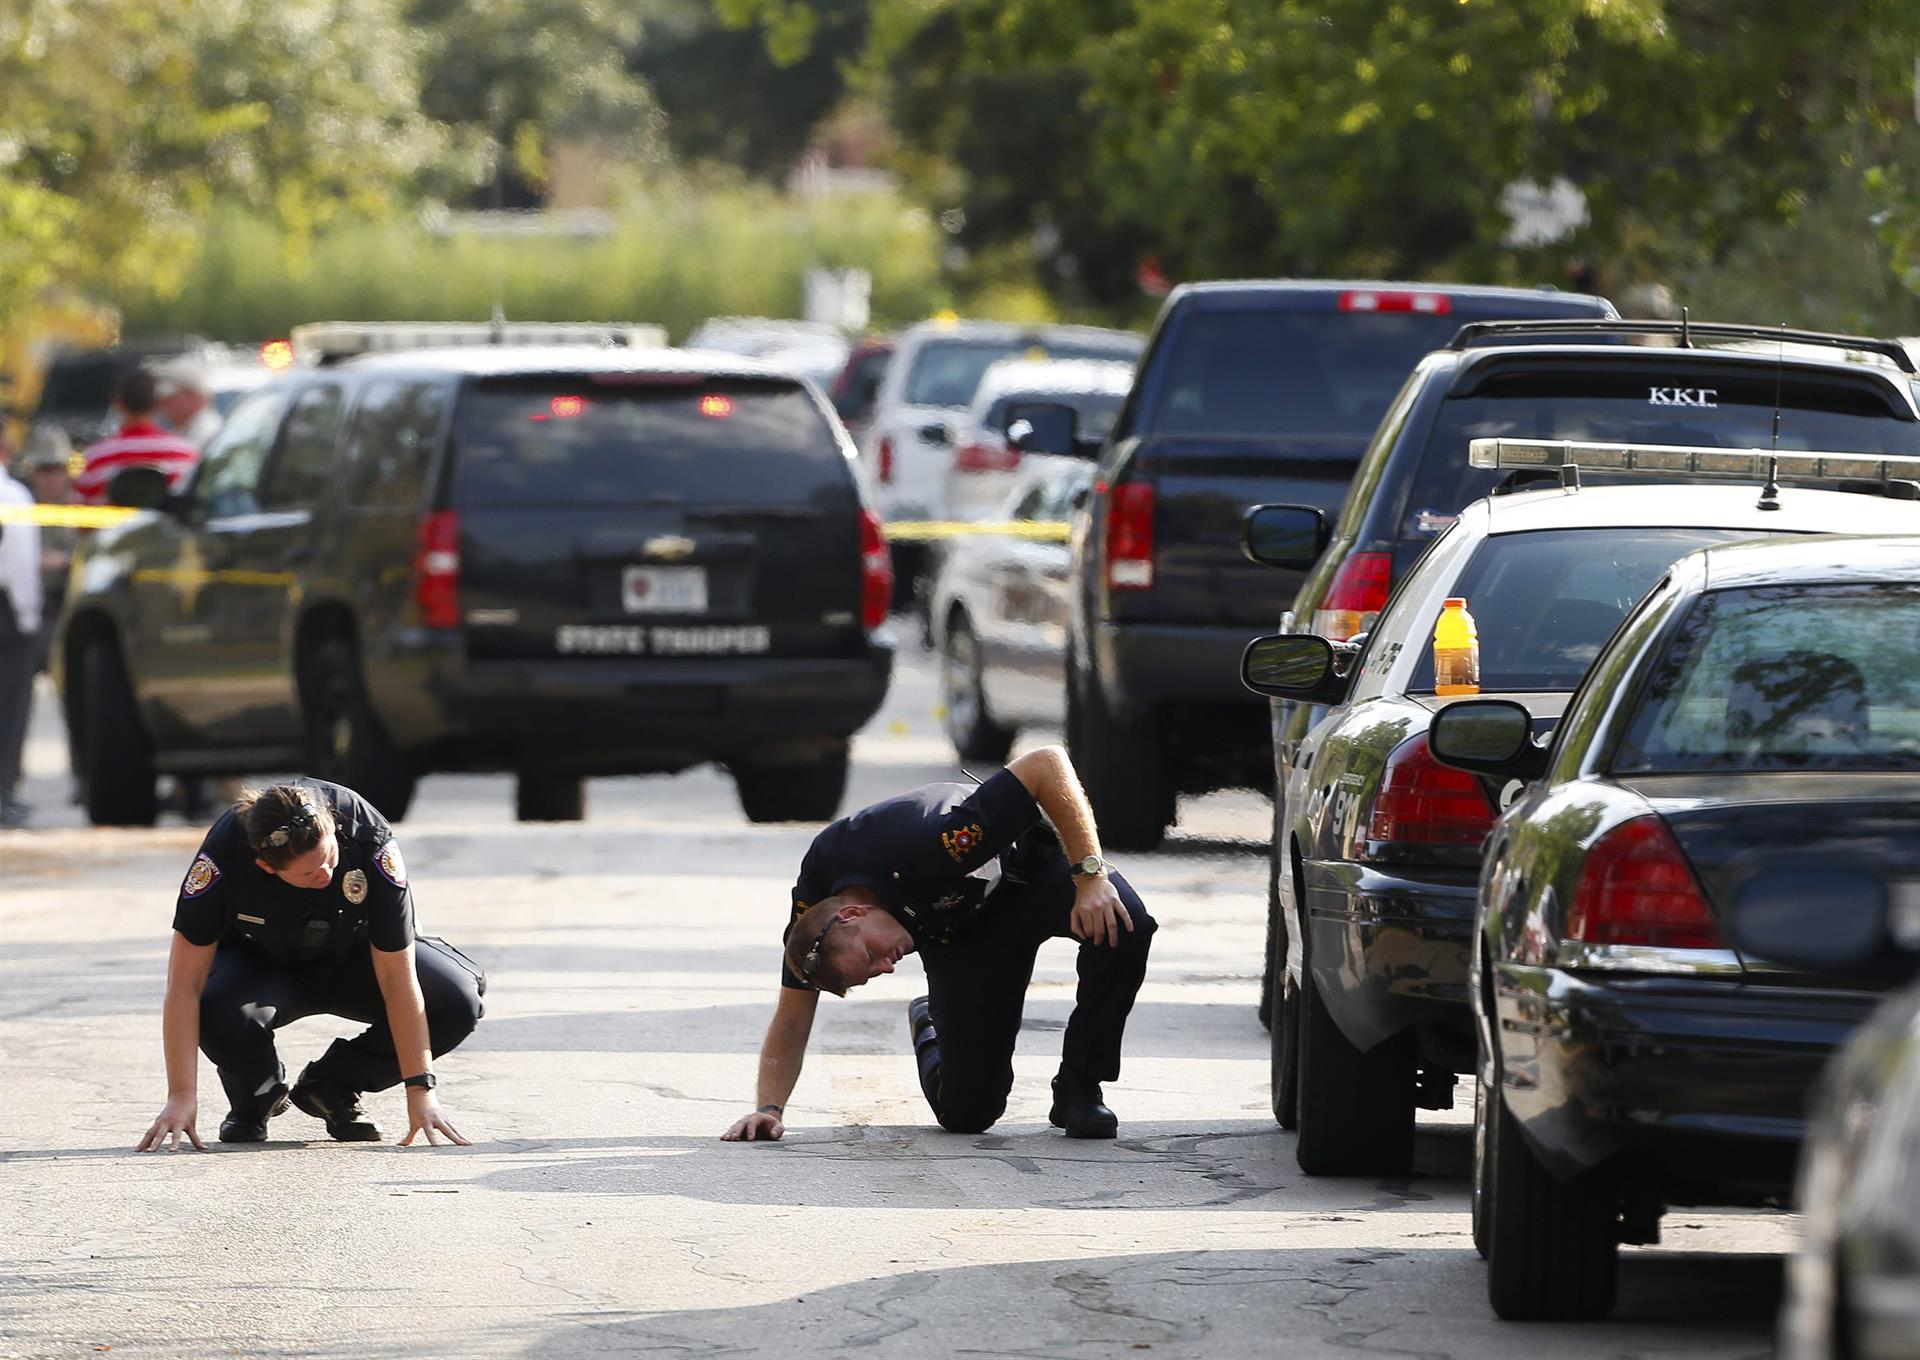 Oficiales de policía investigan la escena del crimen de un tiroteo cerca de la Universidad Texas A&M, en la localidad de College Station, Texas (EEUU). Fotografía de archivo. EFE/AARON M. SPRECHER
